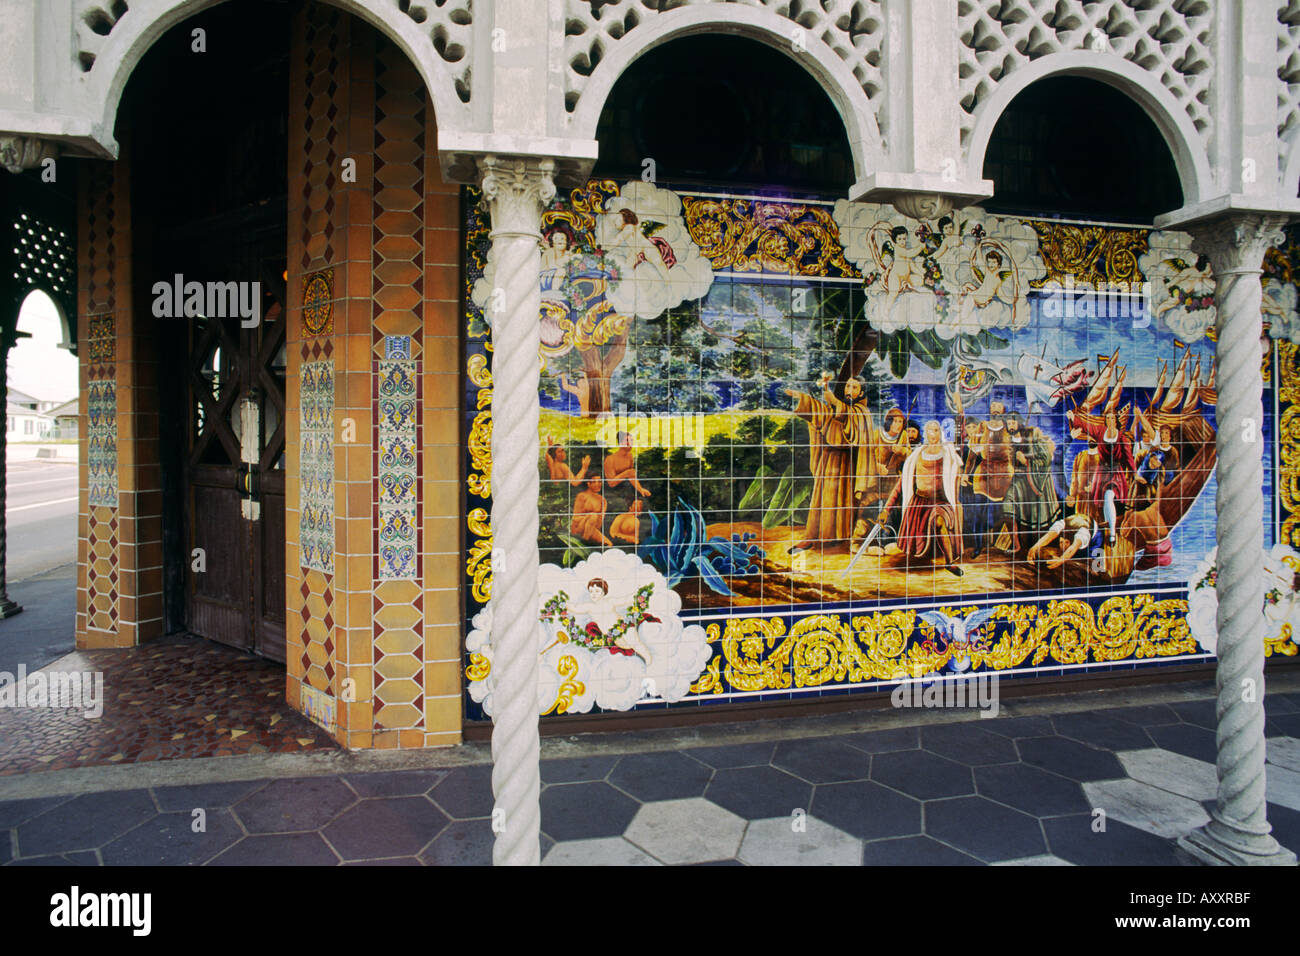 Famoso mosaico original mural mosaico imágenes adornan el restaurante Columbia en el distrito cubano de Ybor City, en Tampa, Florida, EE.UU. Foto de stock